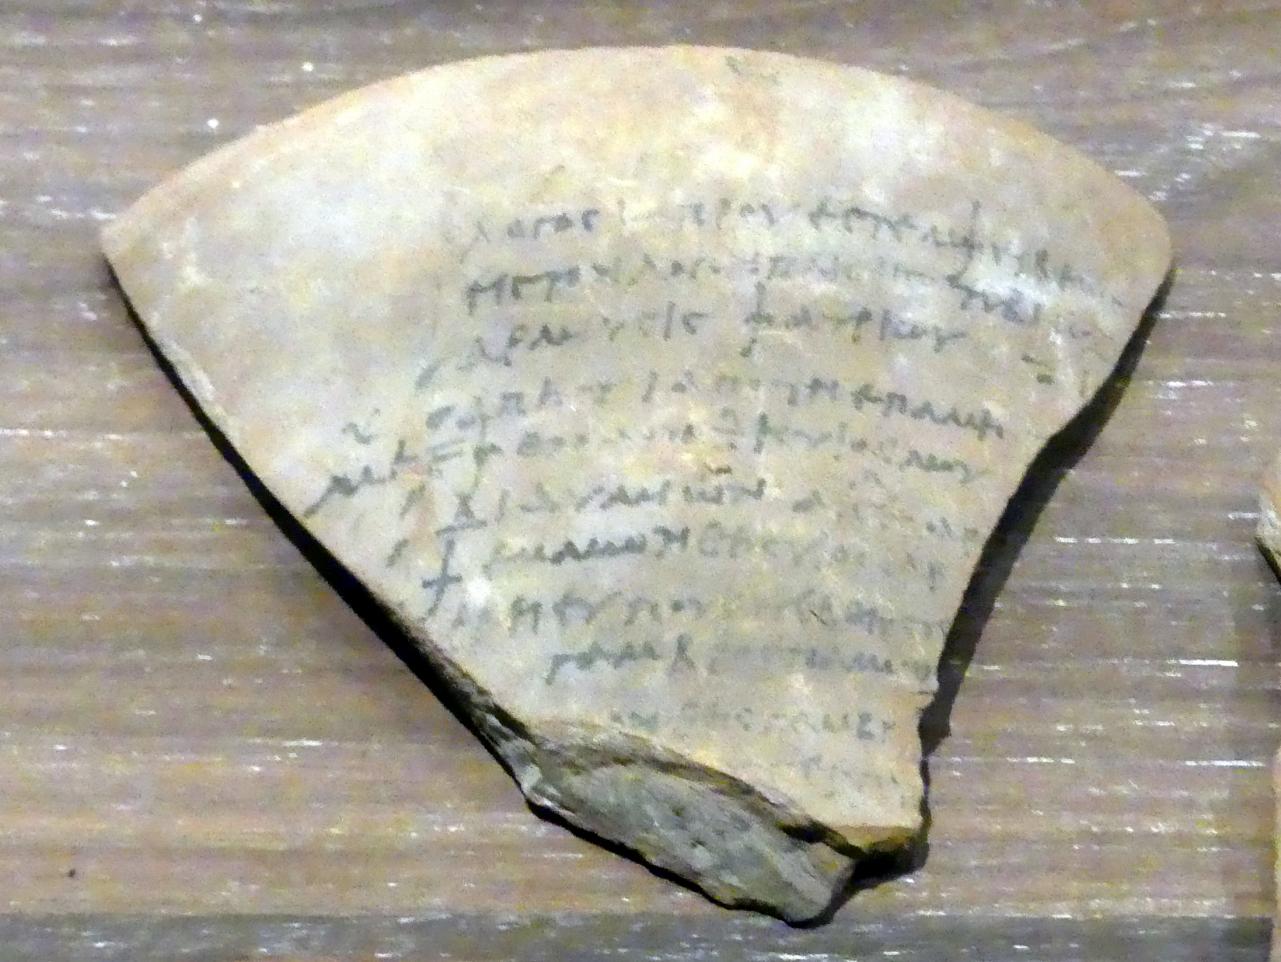 Ostrakon (Scherbe) mit koptischem Text, Koptische Zeit, 200 - 800, 300 - 600, Bild 1/2